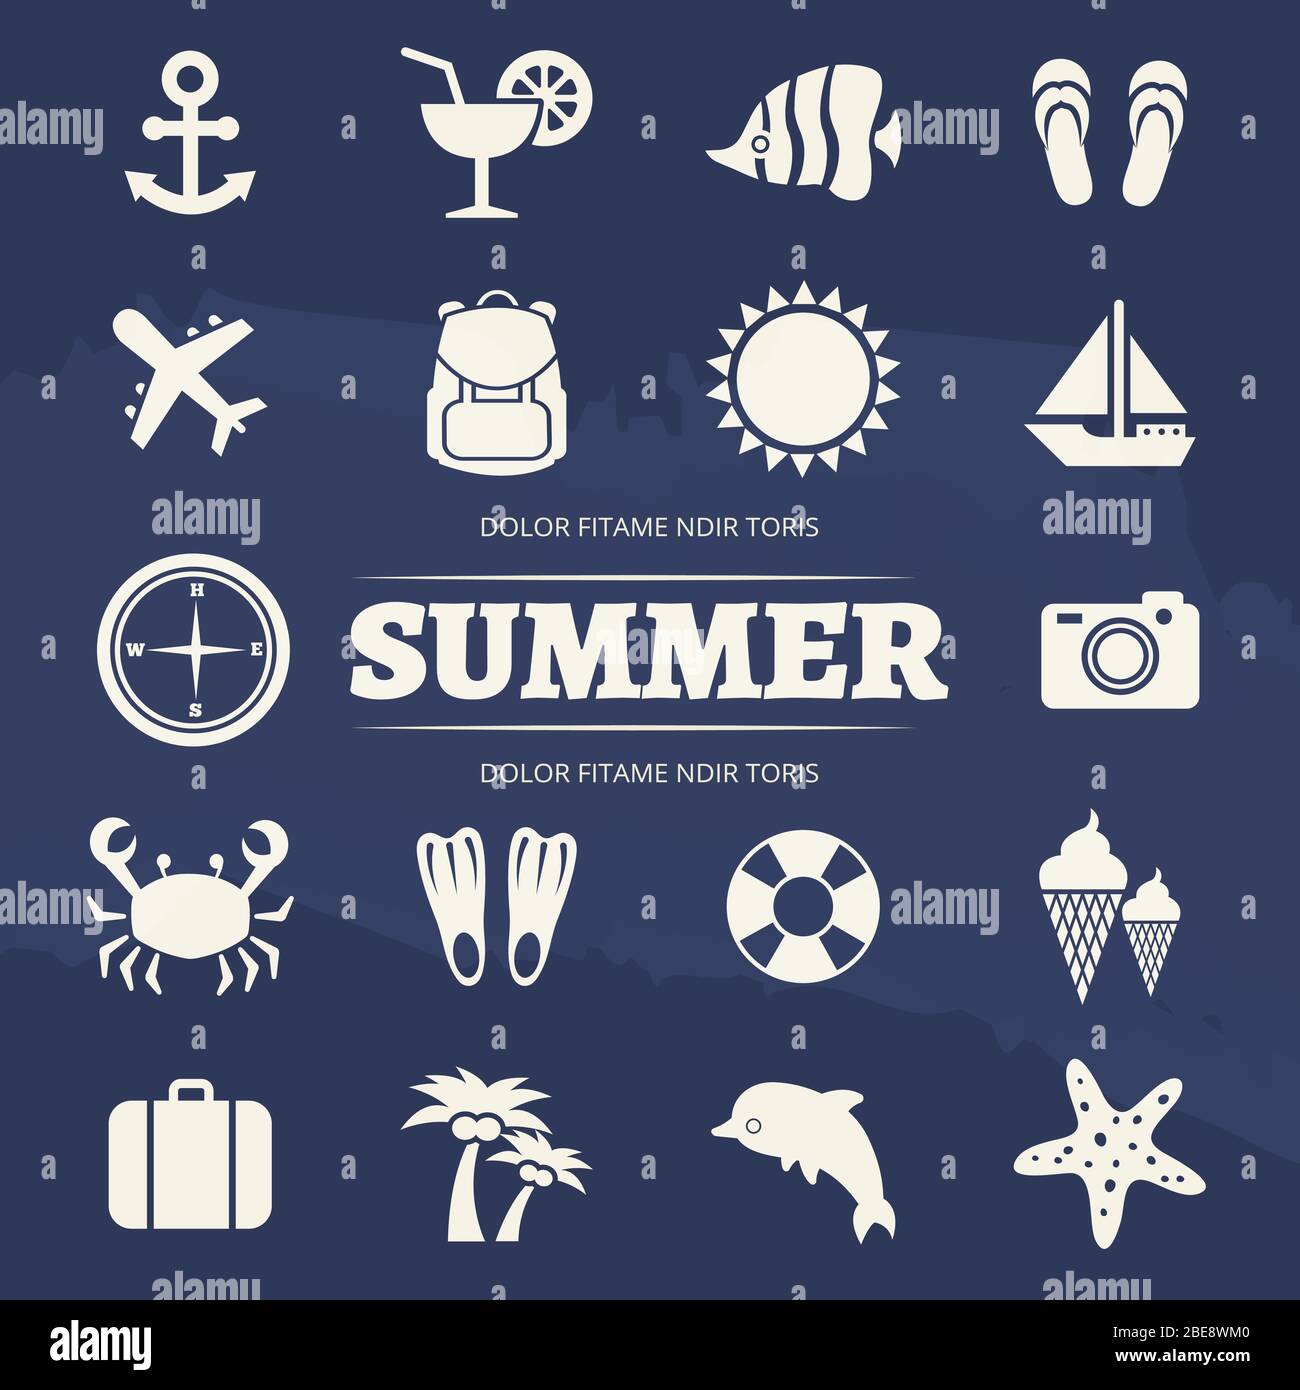 Sommer Urlaub Icons Set - Reise Abenteuer Symbol. Sommer Reise Ikone Anker und Sonne, Cocktail und Freizeit, Vektor-Illustration Stock Vektor